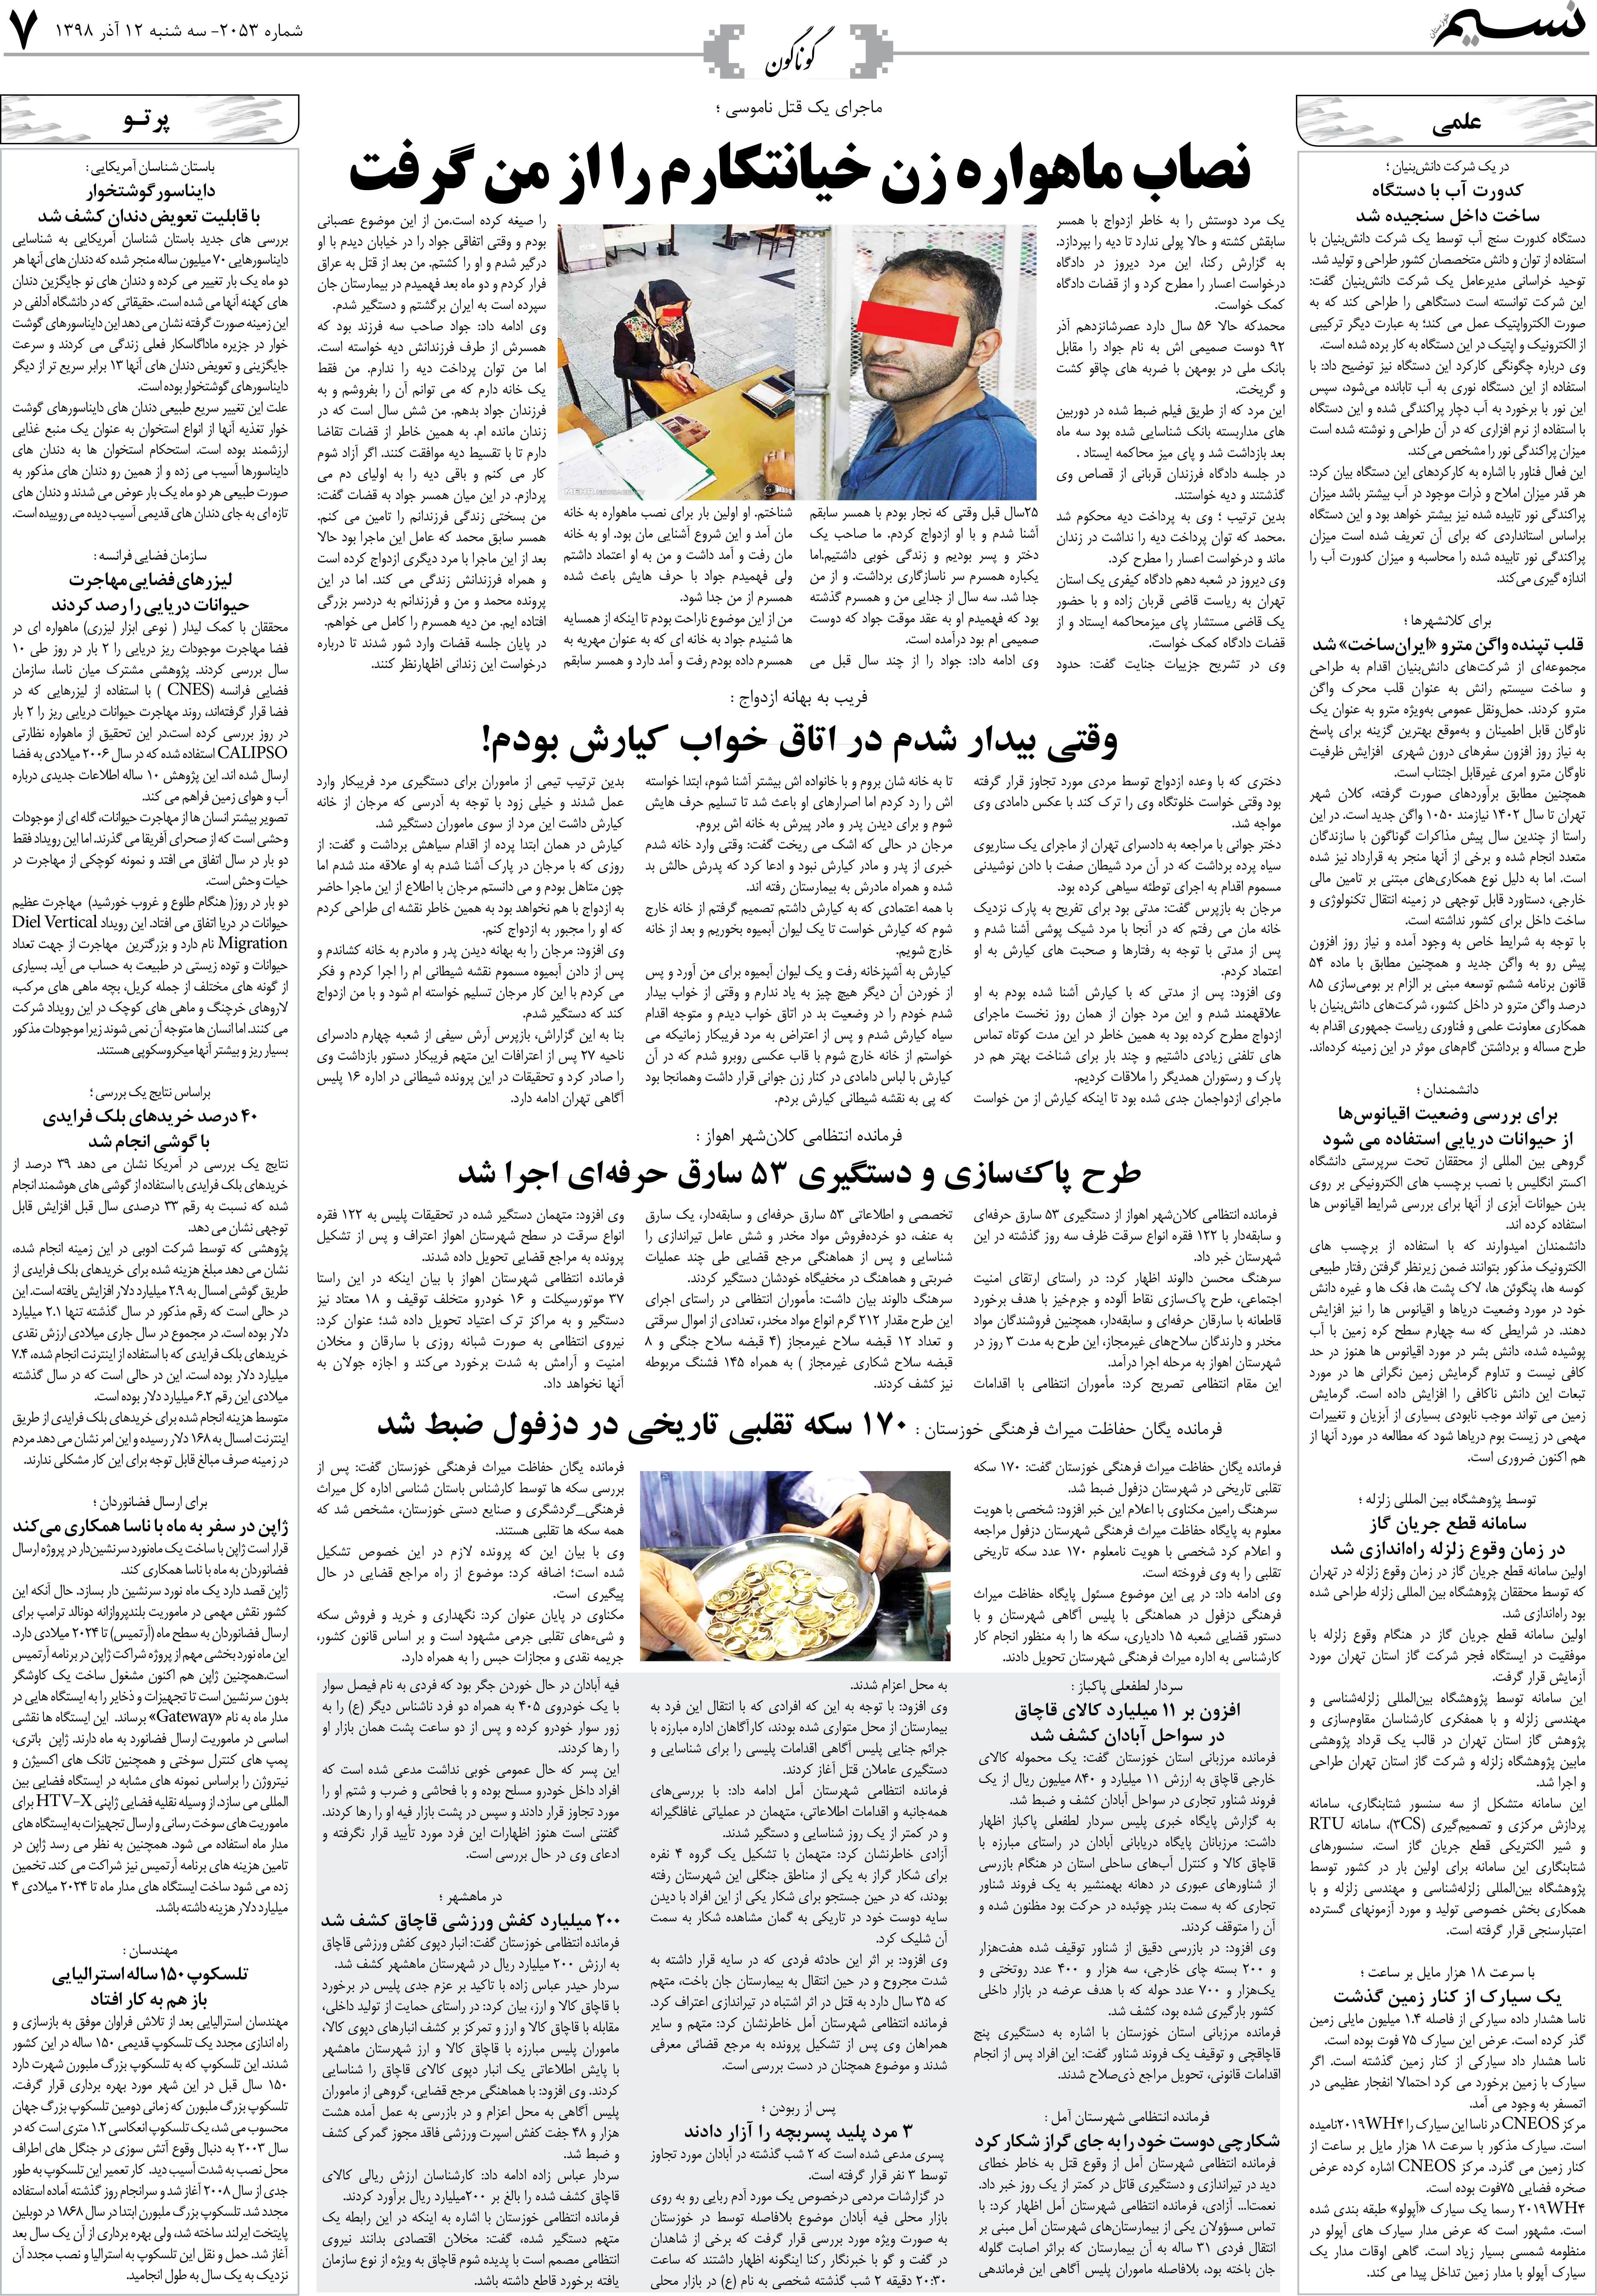 صفحه گوناگون روزنامه نسیم شماره 2053